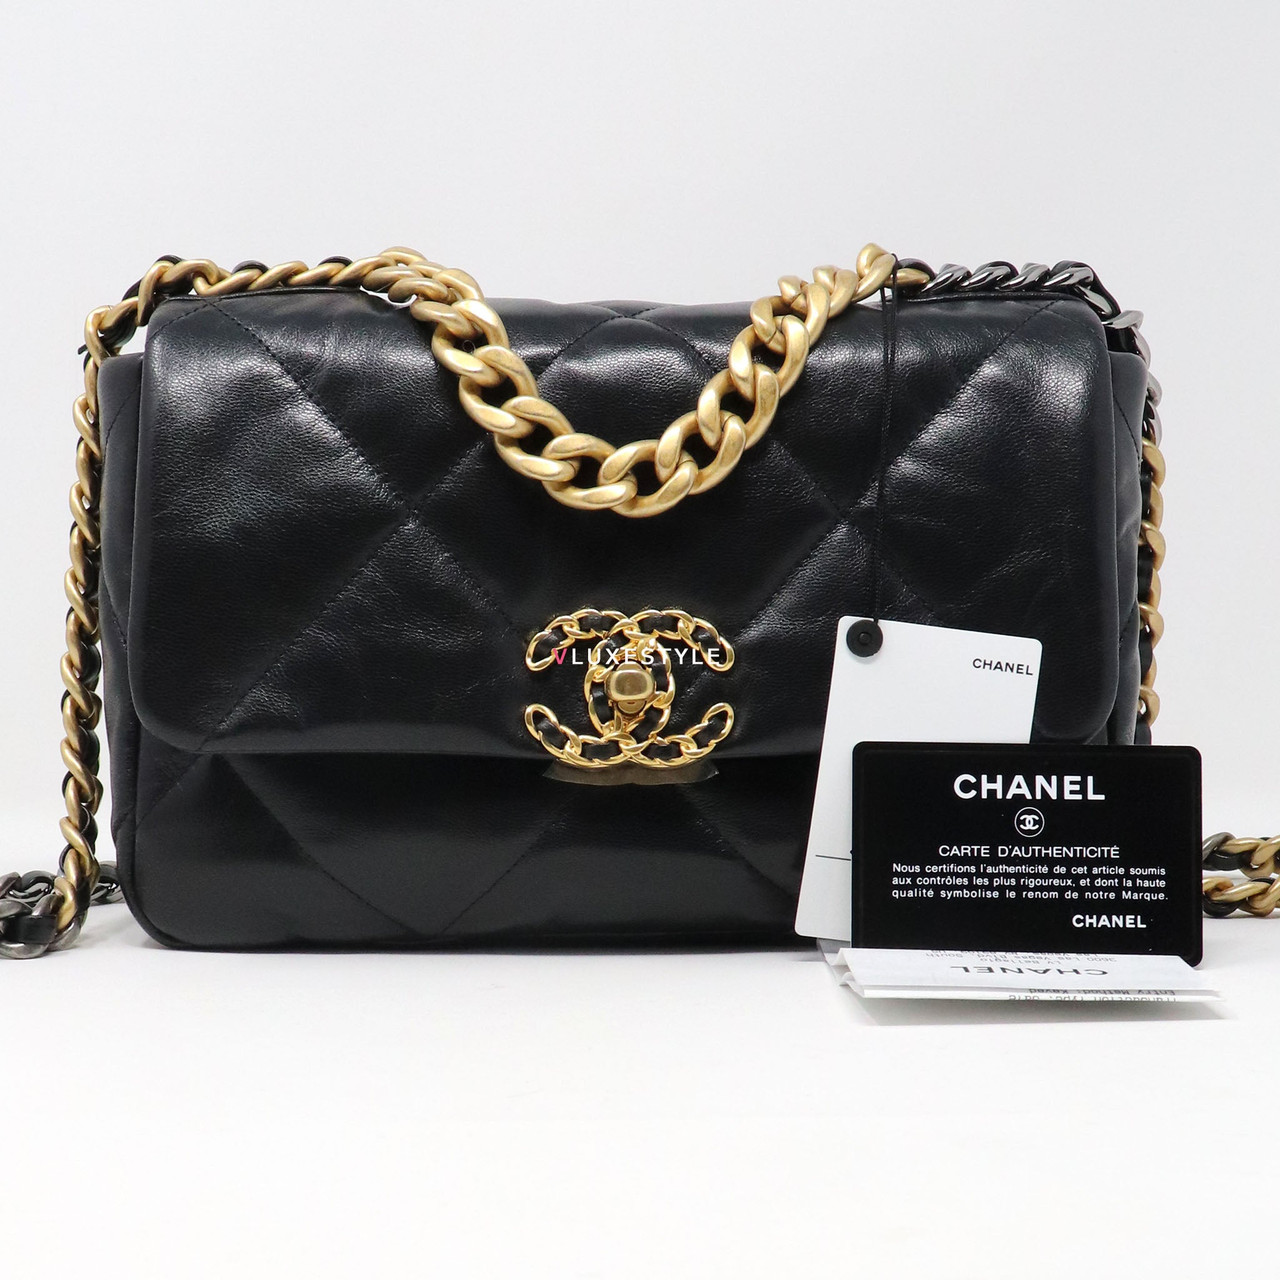 Chanel Large 19 flap bag in black goatskin